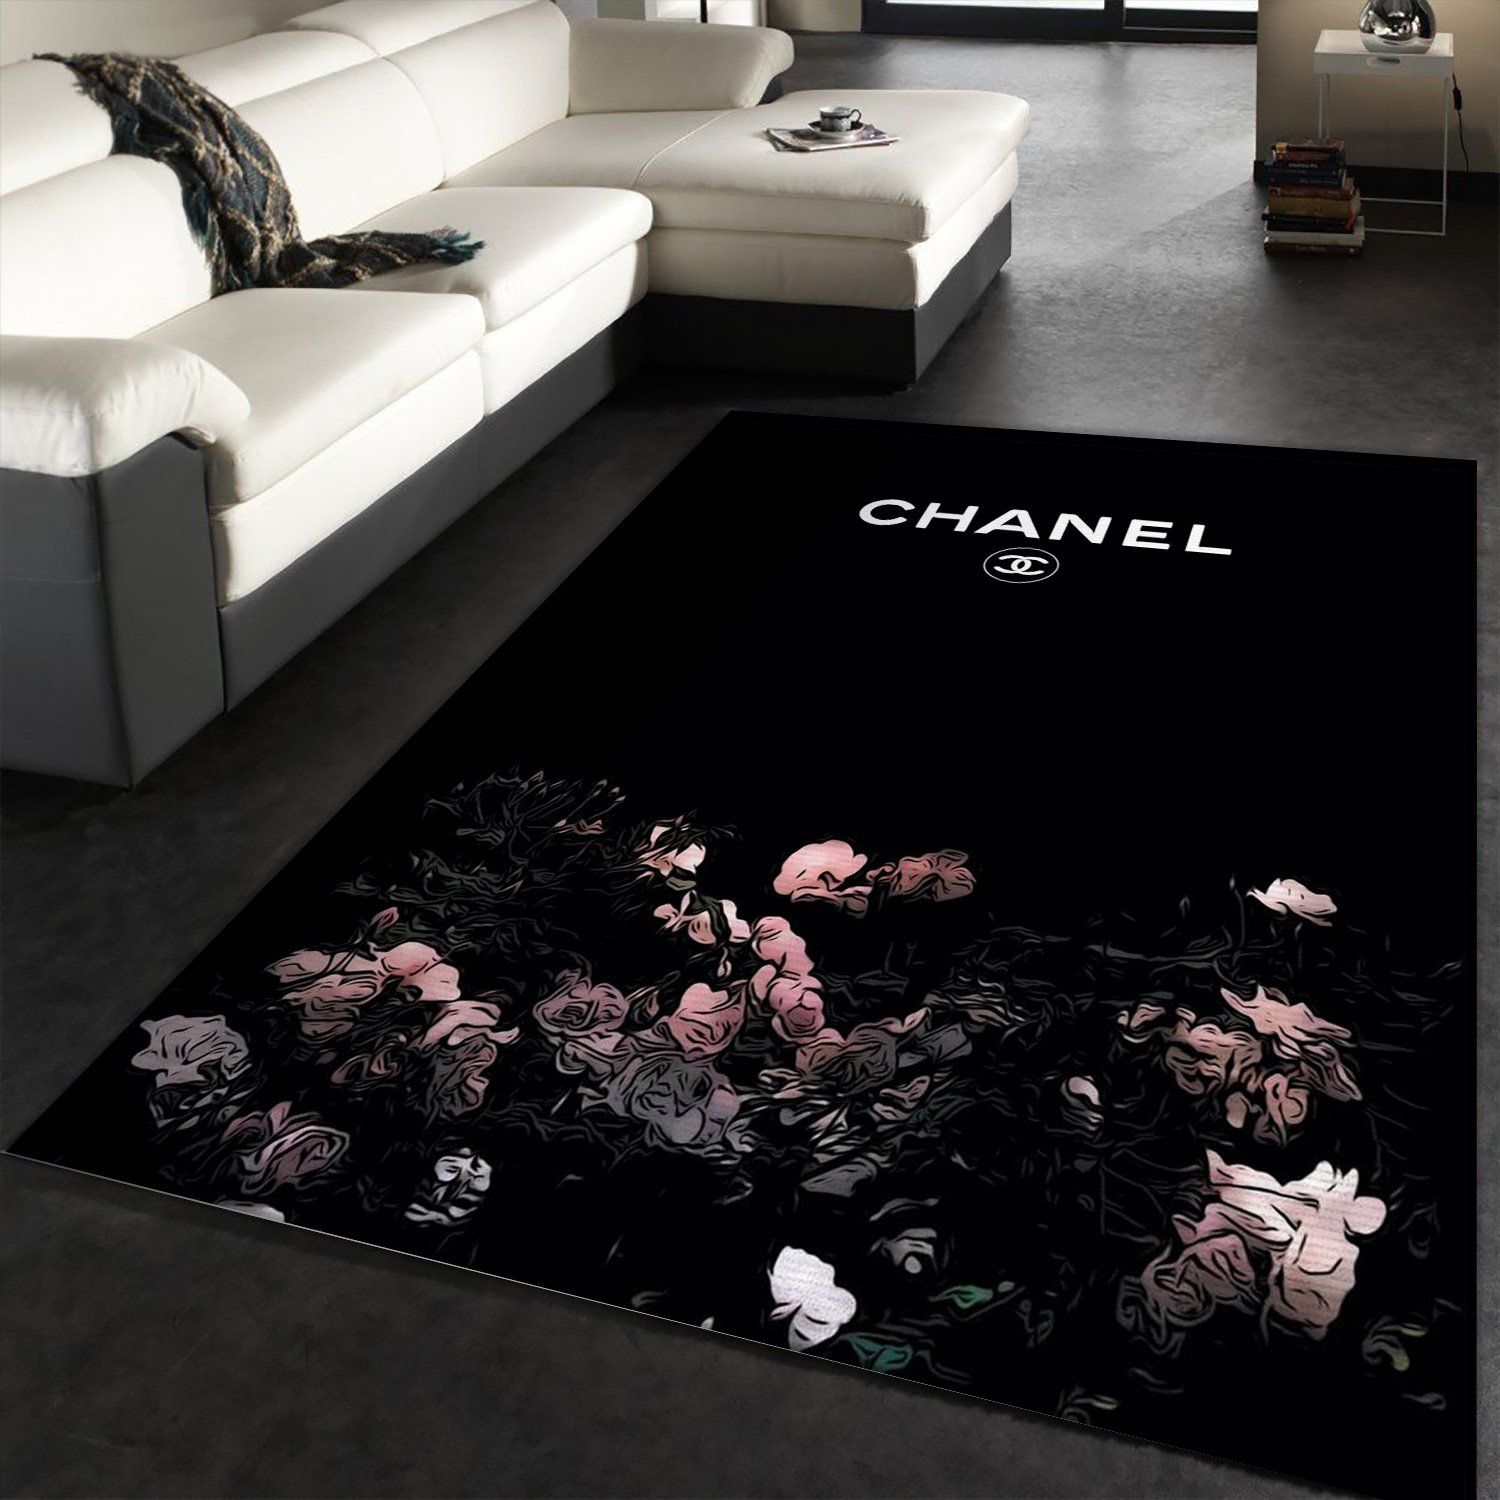 Chanel Area Rug For Christmas Fashion Brand Rug Living Room Rug Floor Decor  Home Decor